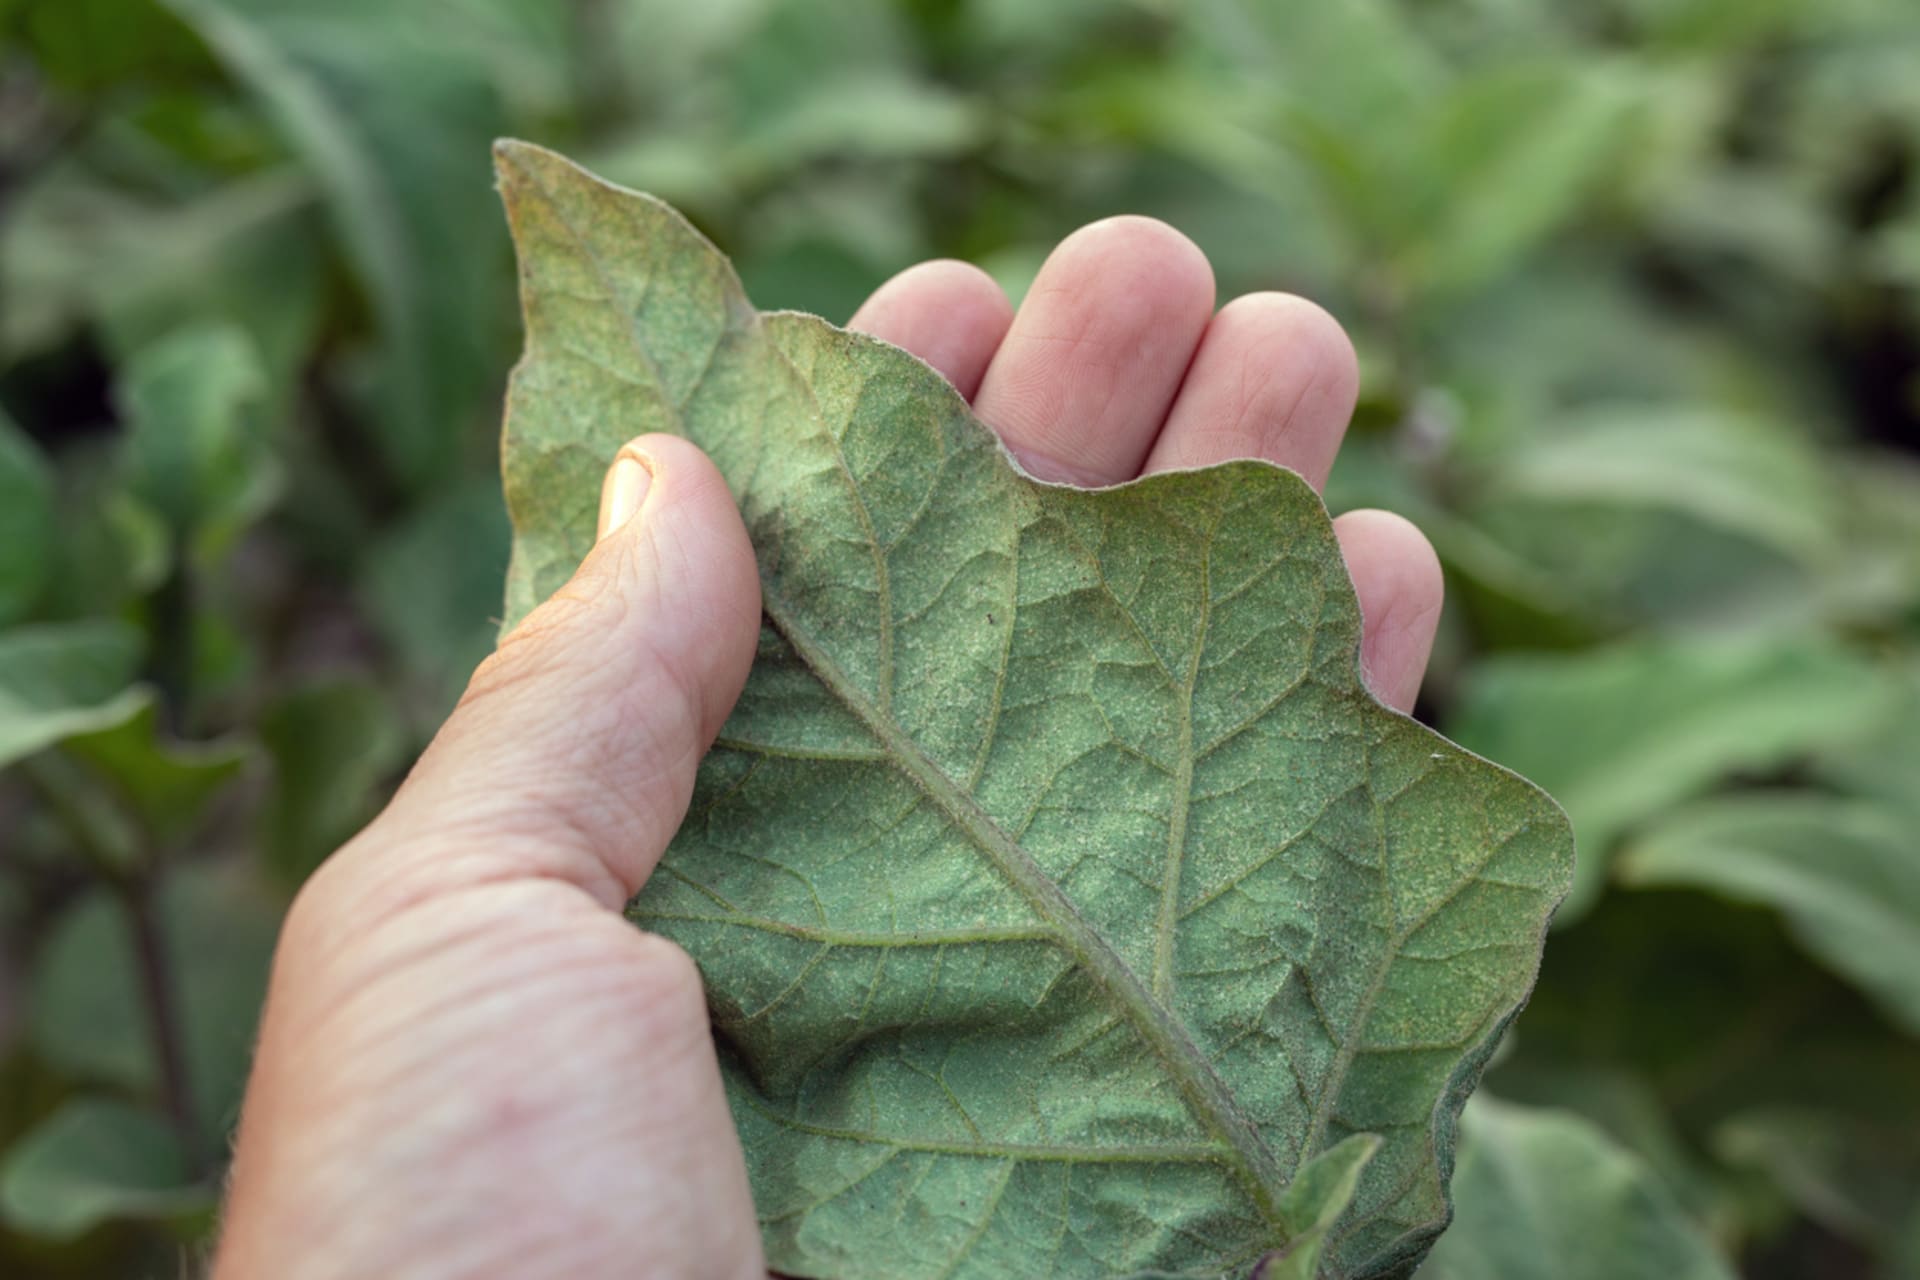 Pokud jste svilušky objevili na listech brzy, mohlo by pomoci osprchování rostlin a omytí listů vlhkou houbičkou